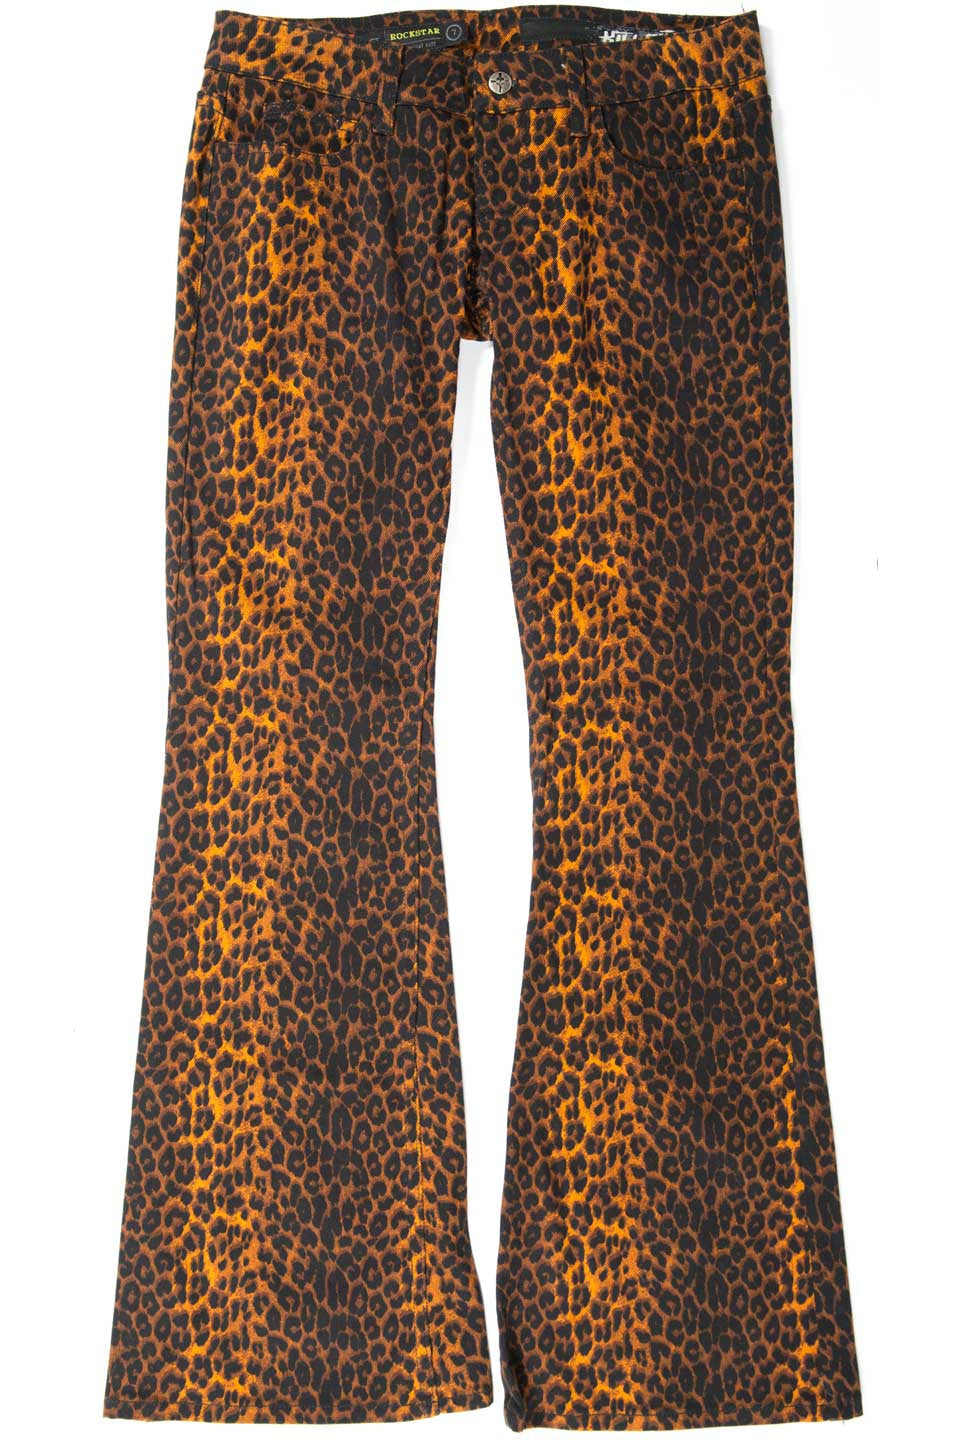 Vintage Leopard Boot Cut Jeans-Jeans-Lip Service